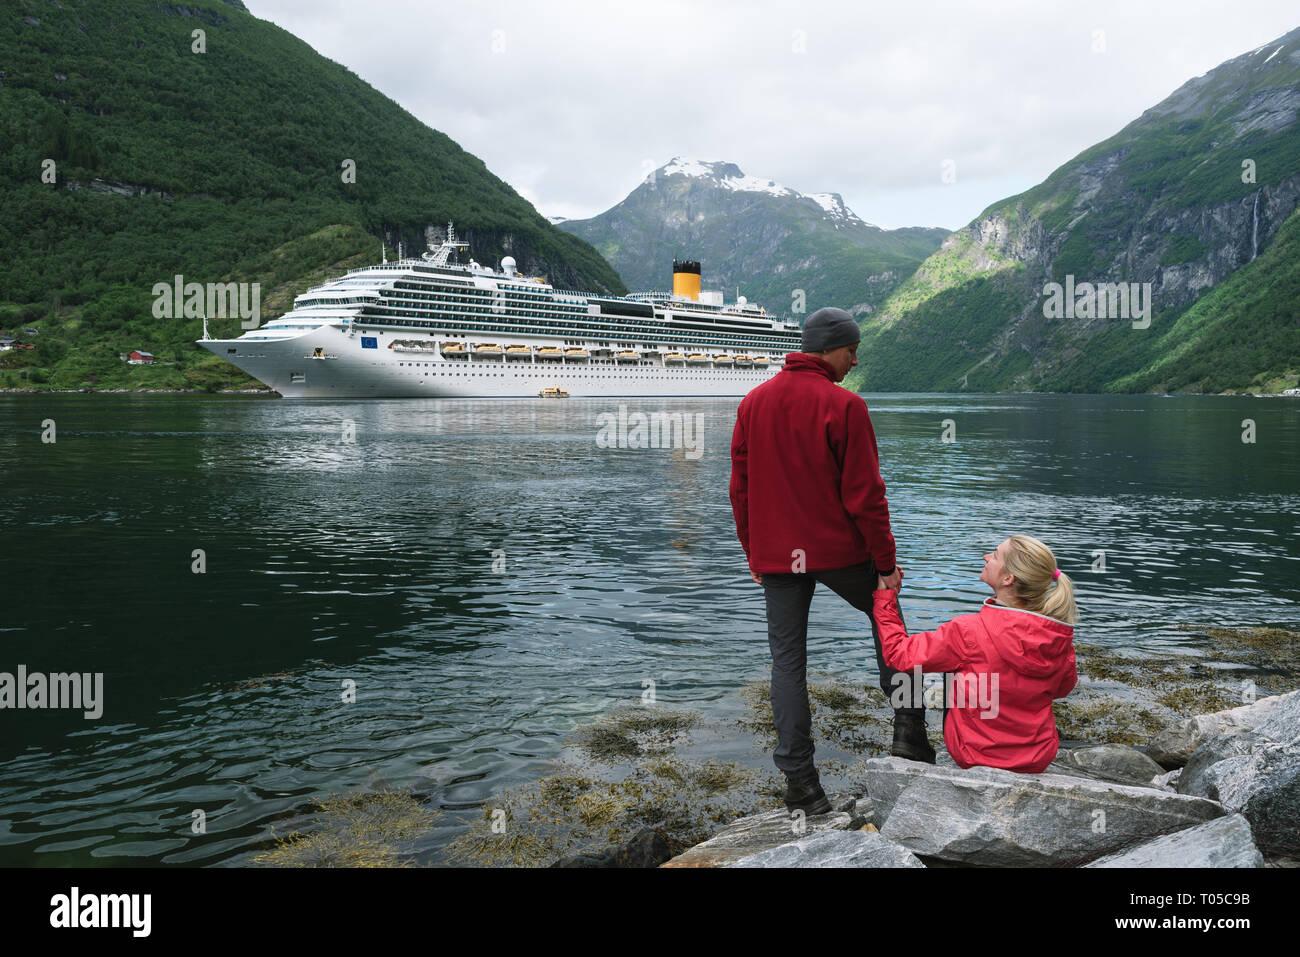 Un paquebot de croisière. Geirangerfjord, près de la ville de Geiranger, Norvège. Jeune couple de voyageurs sur la rive du fjord Banque D'Images